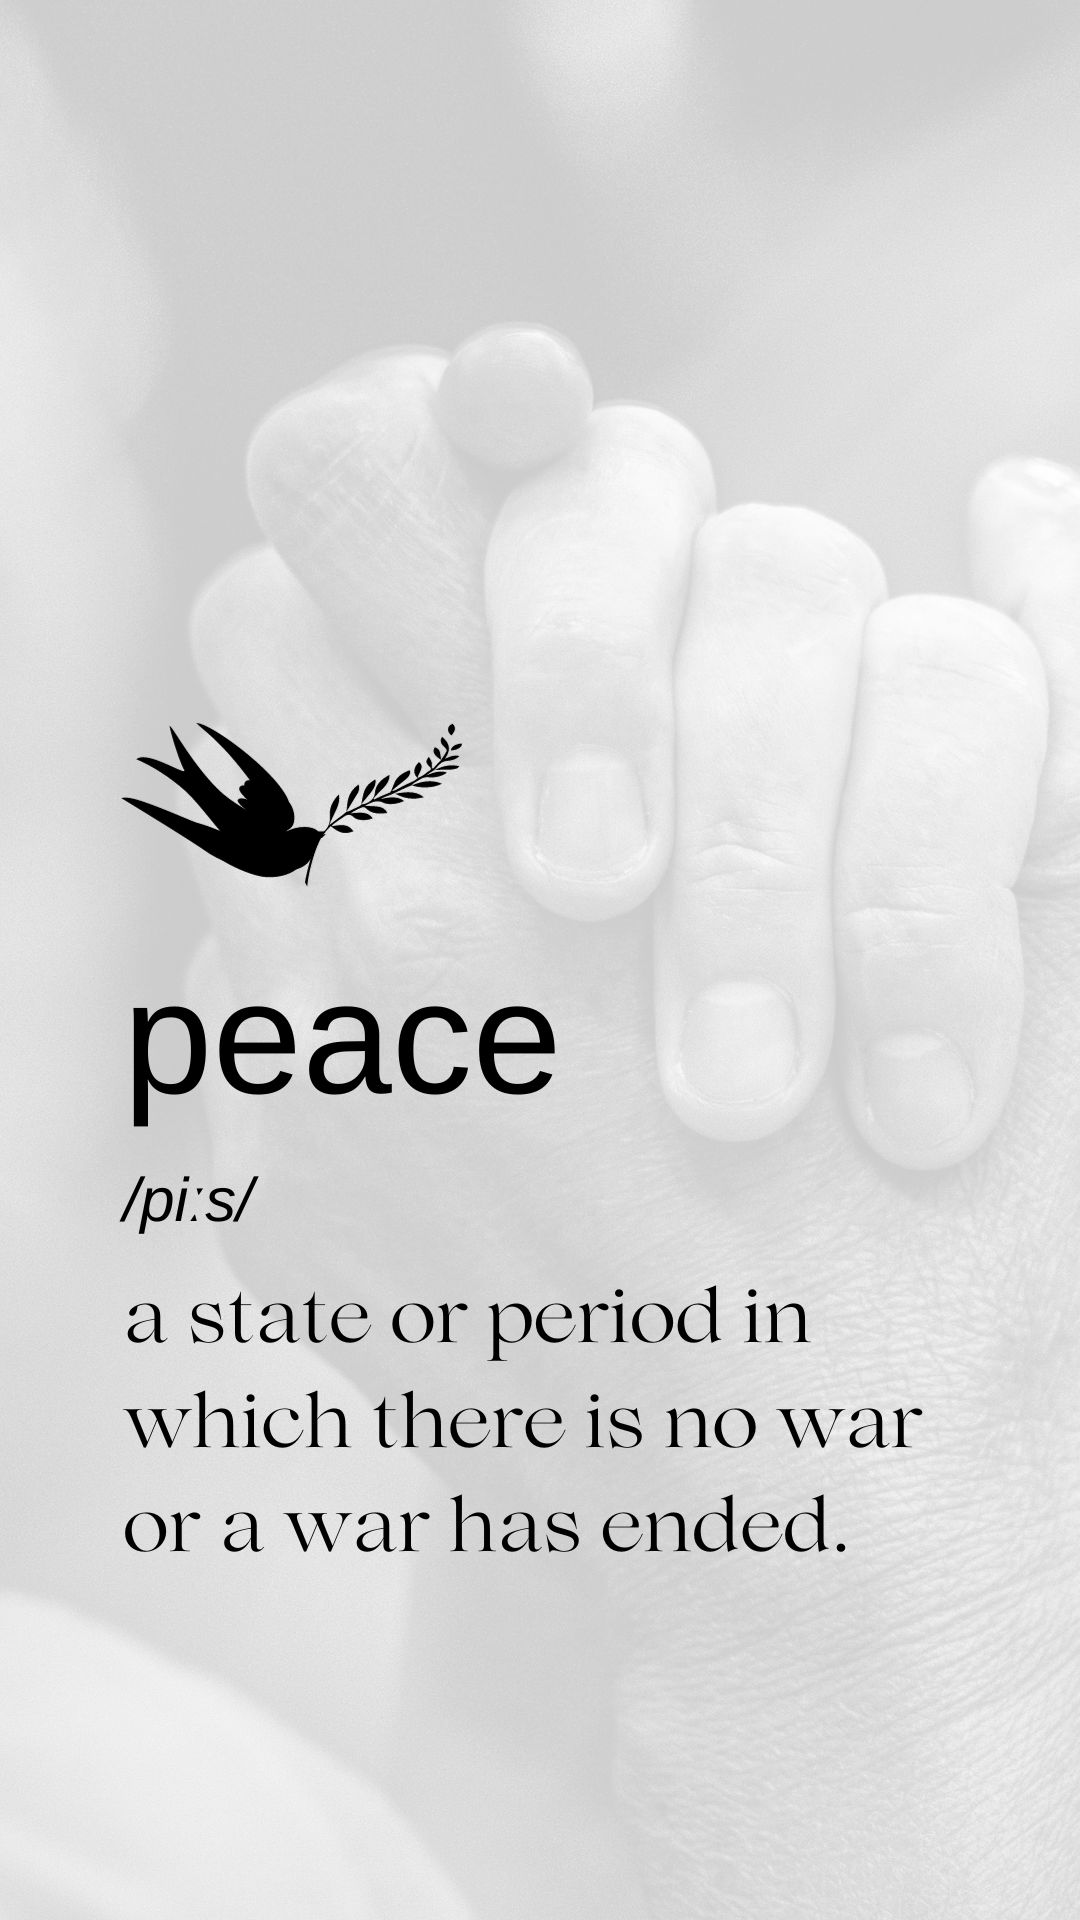 Ai lại không yêu hoà bình chứ?